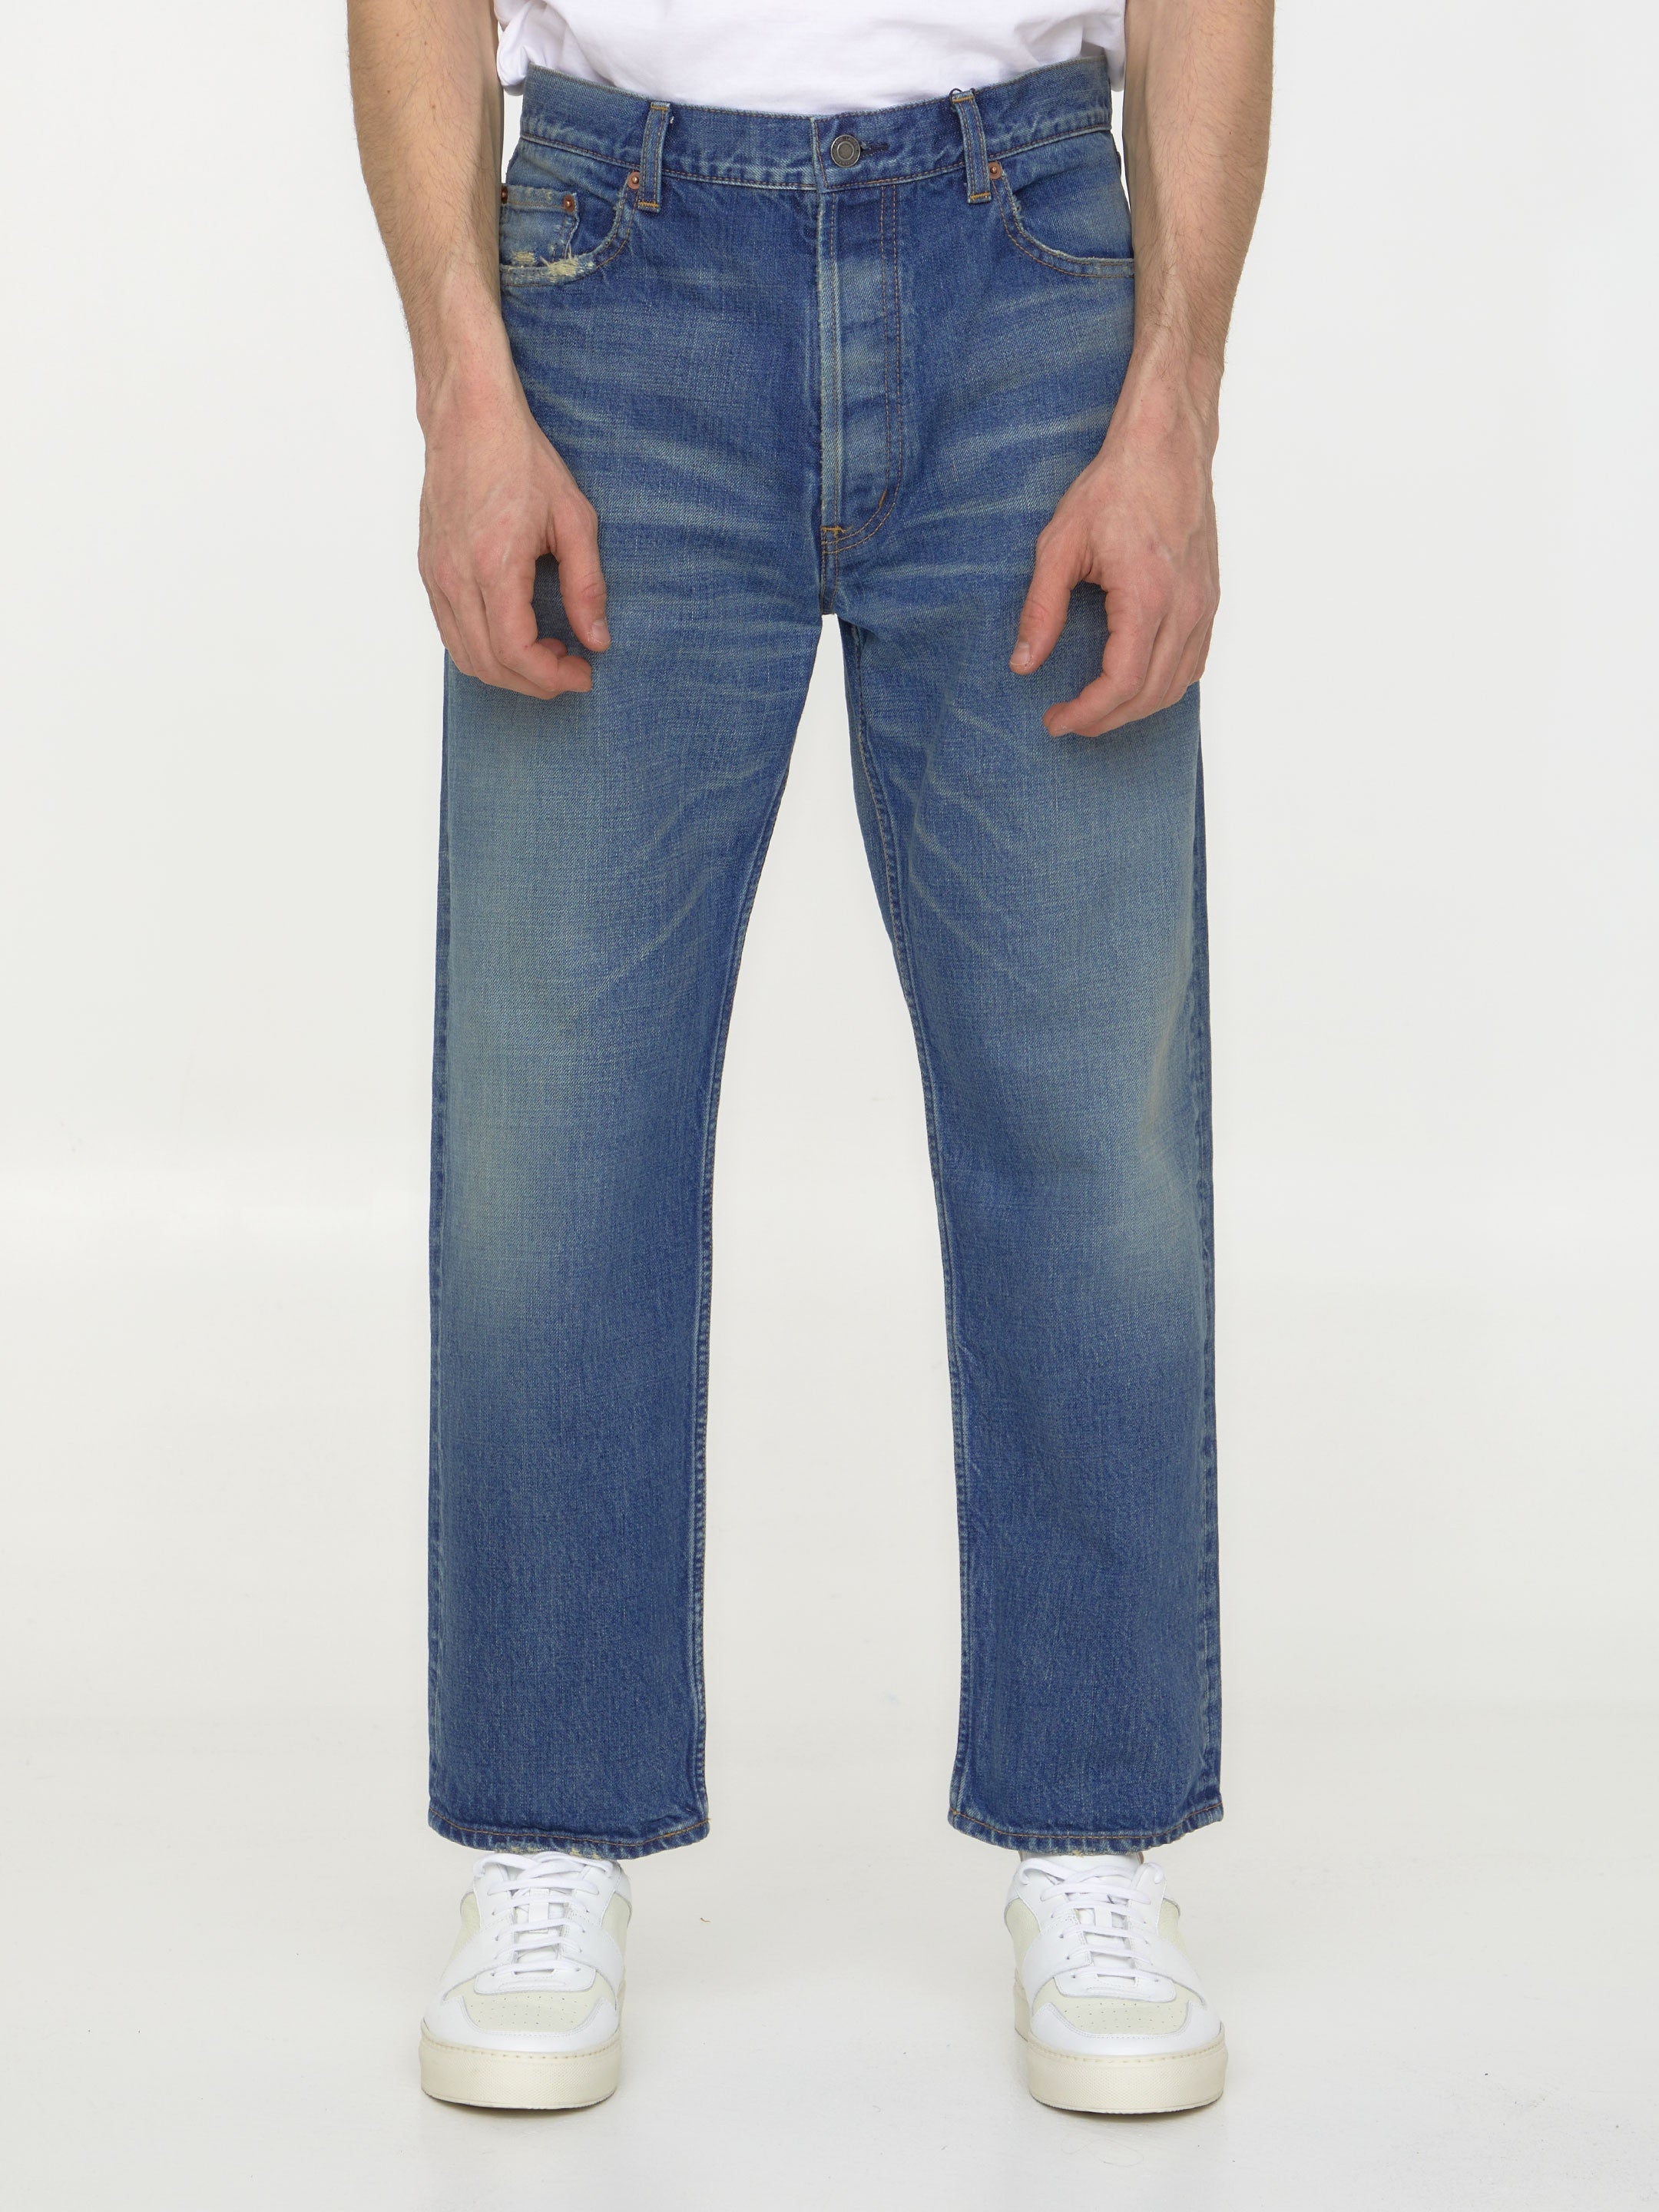 SAINT-LAURENT-OUTLET-SALE-Blue-denim-jeans-Jeans-31-BLUE-ARCHIVE-COLLECTION.jpg